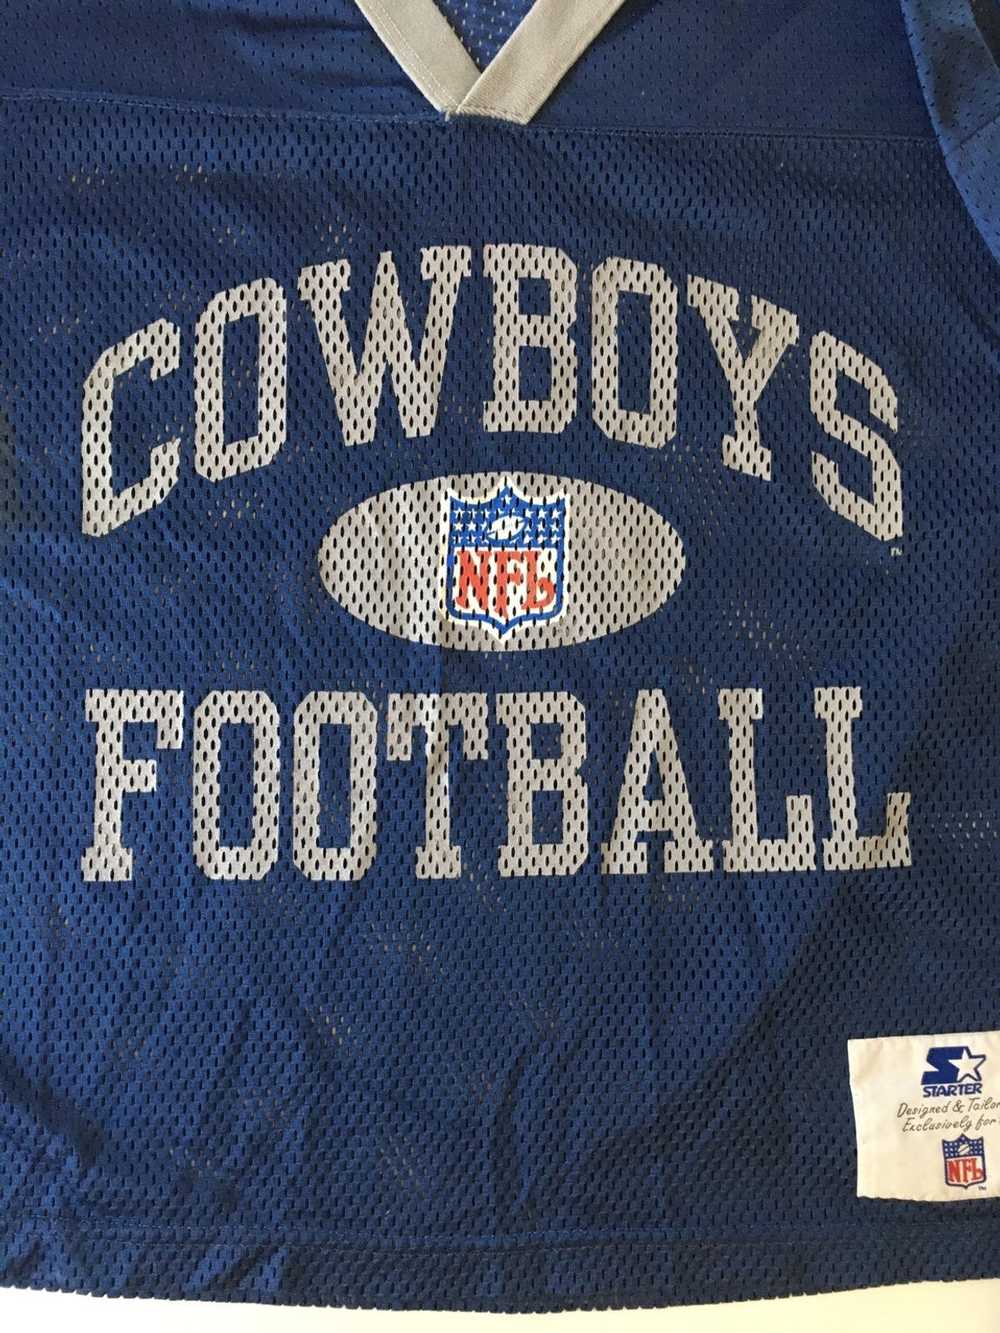 Starter Cowboys vintage jersey starter - image 5